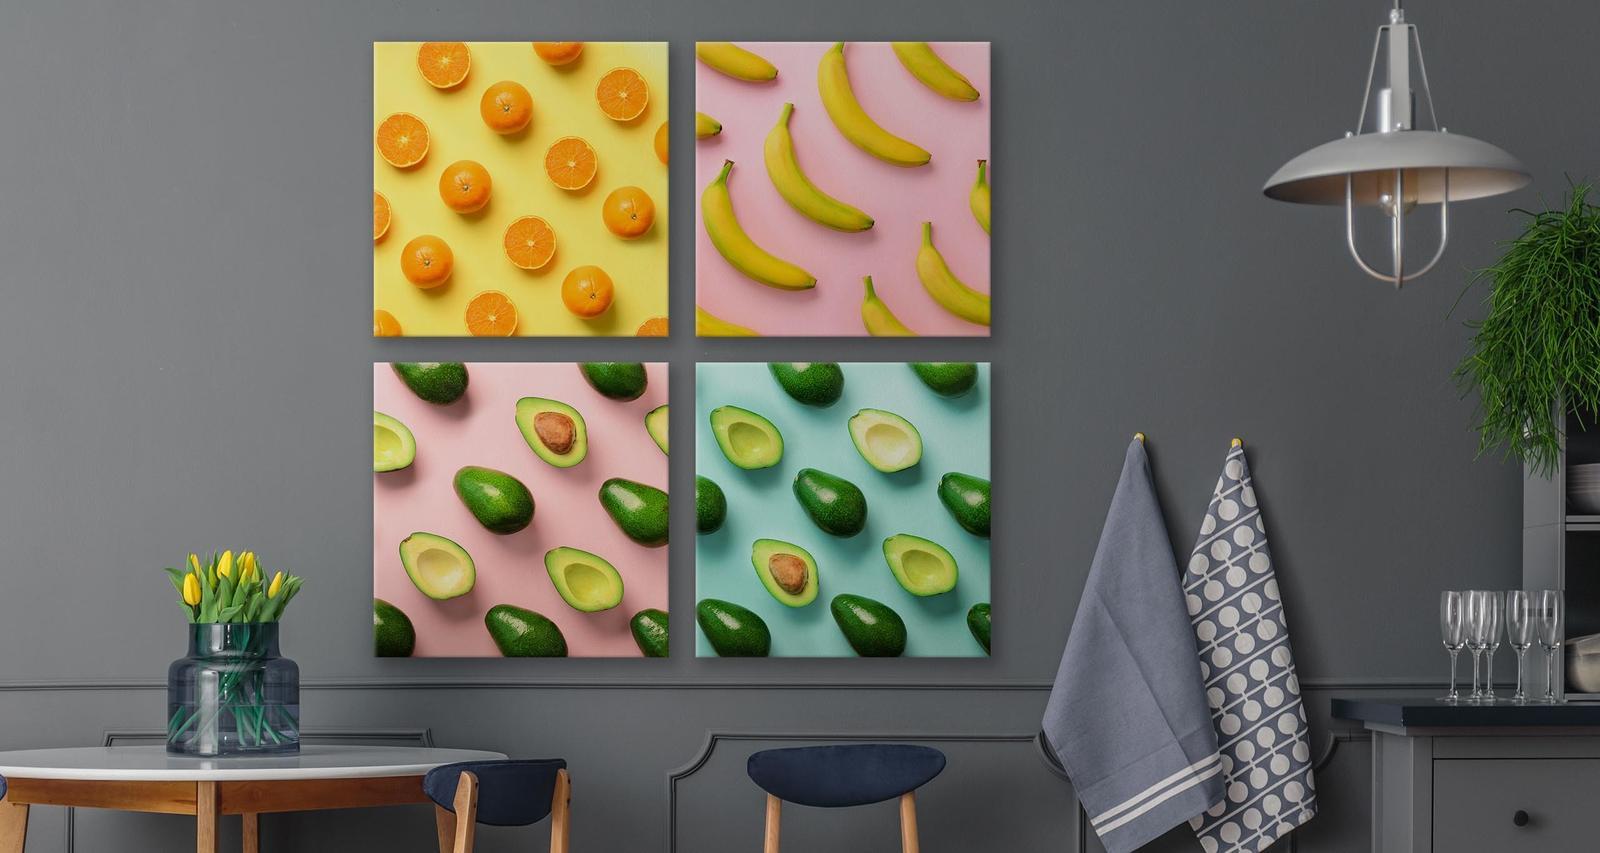 Obrazy SET Do Kuchni OWOCE Cytrusy Awokado Pop-Art Jedzenie 100x100cm nr. 5